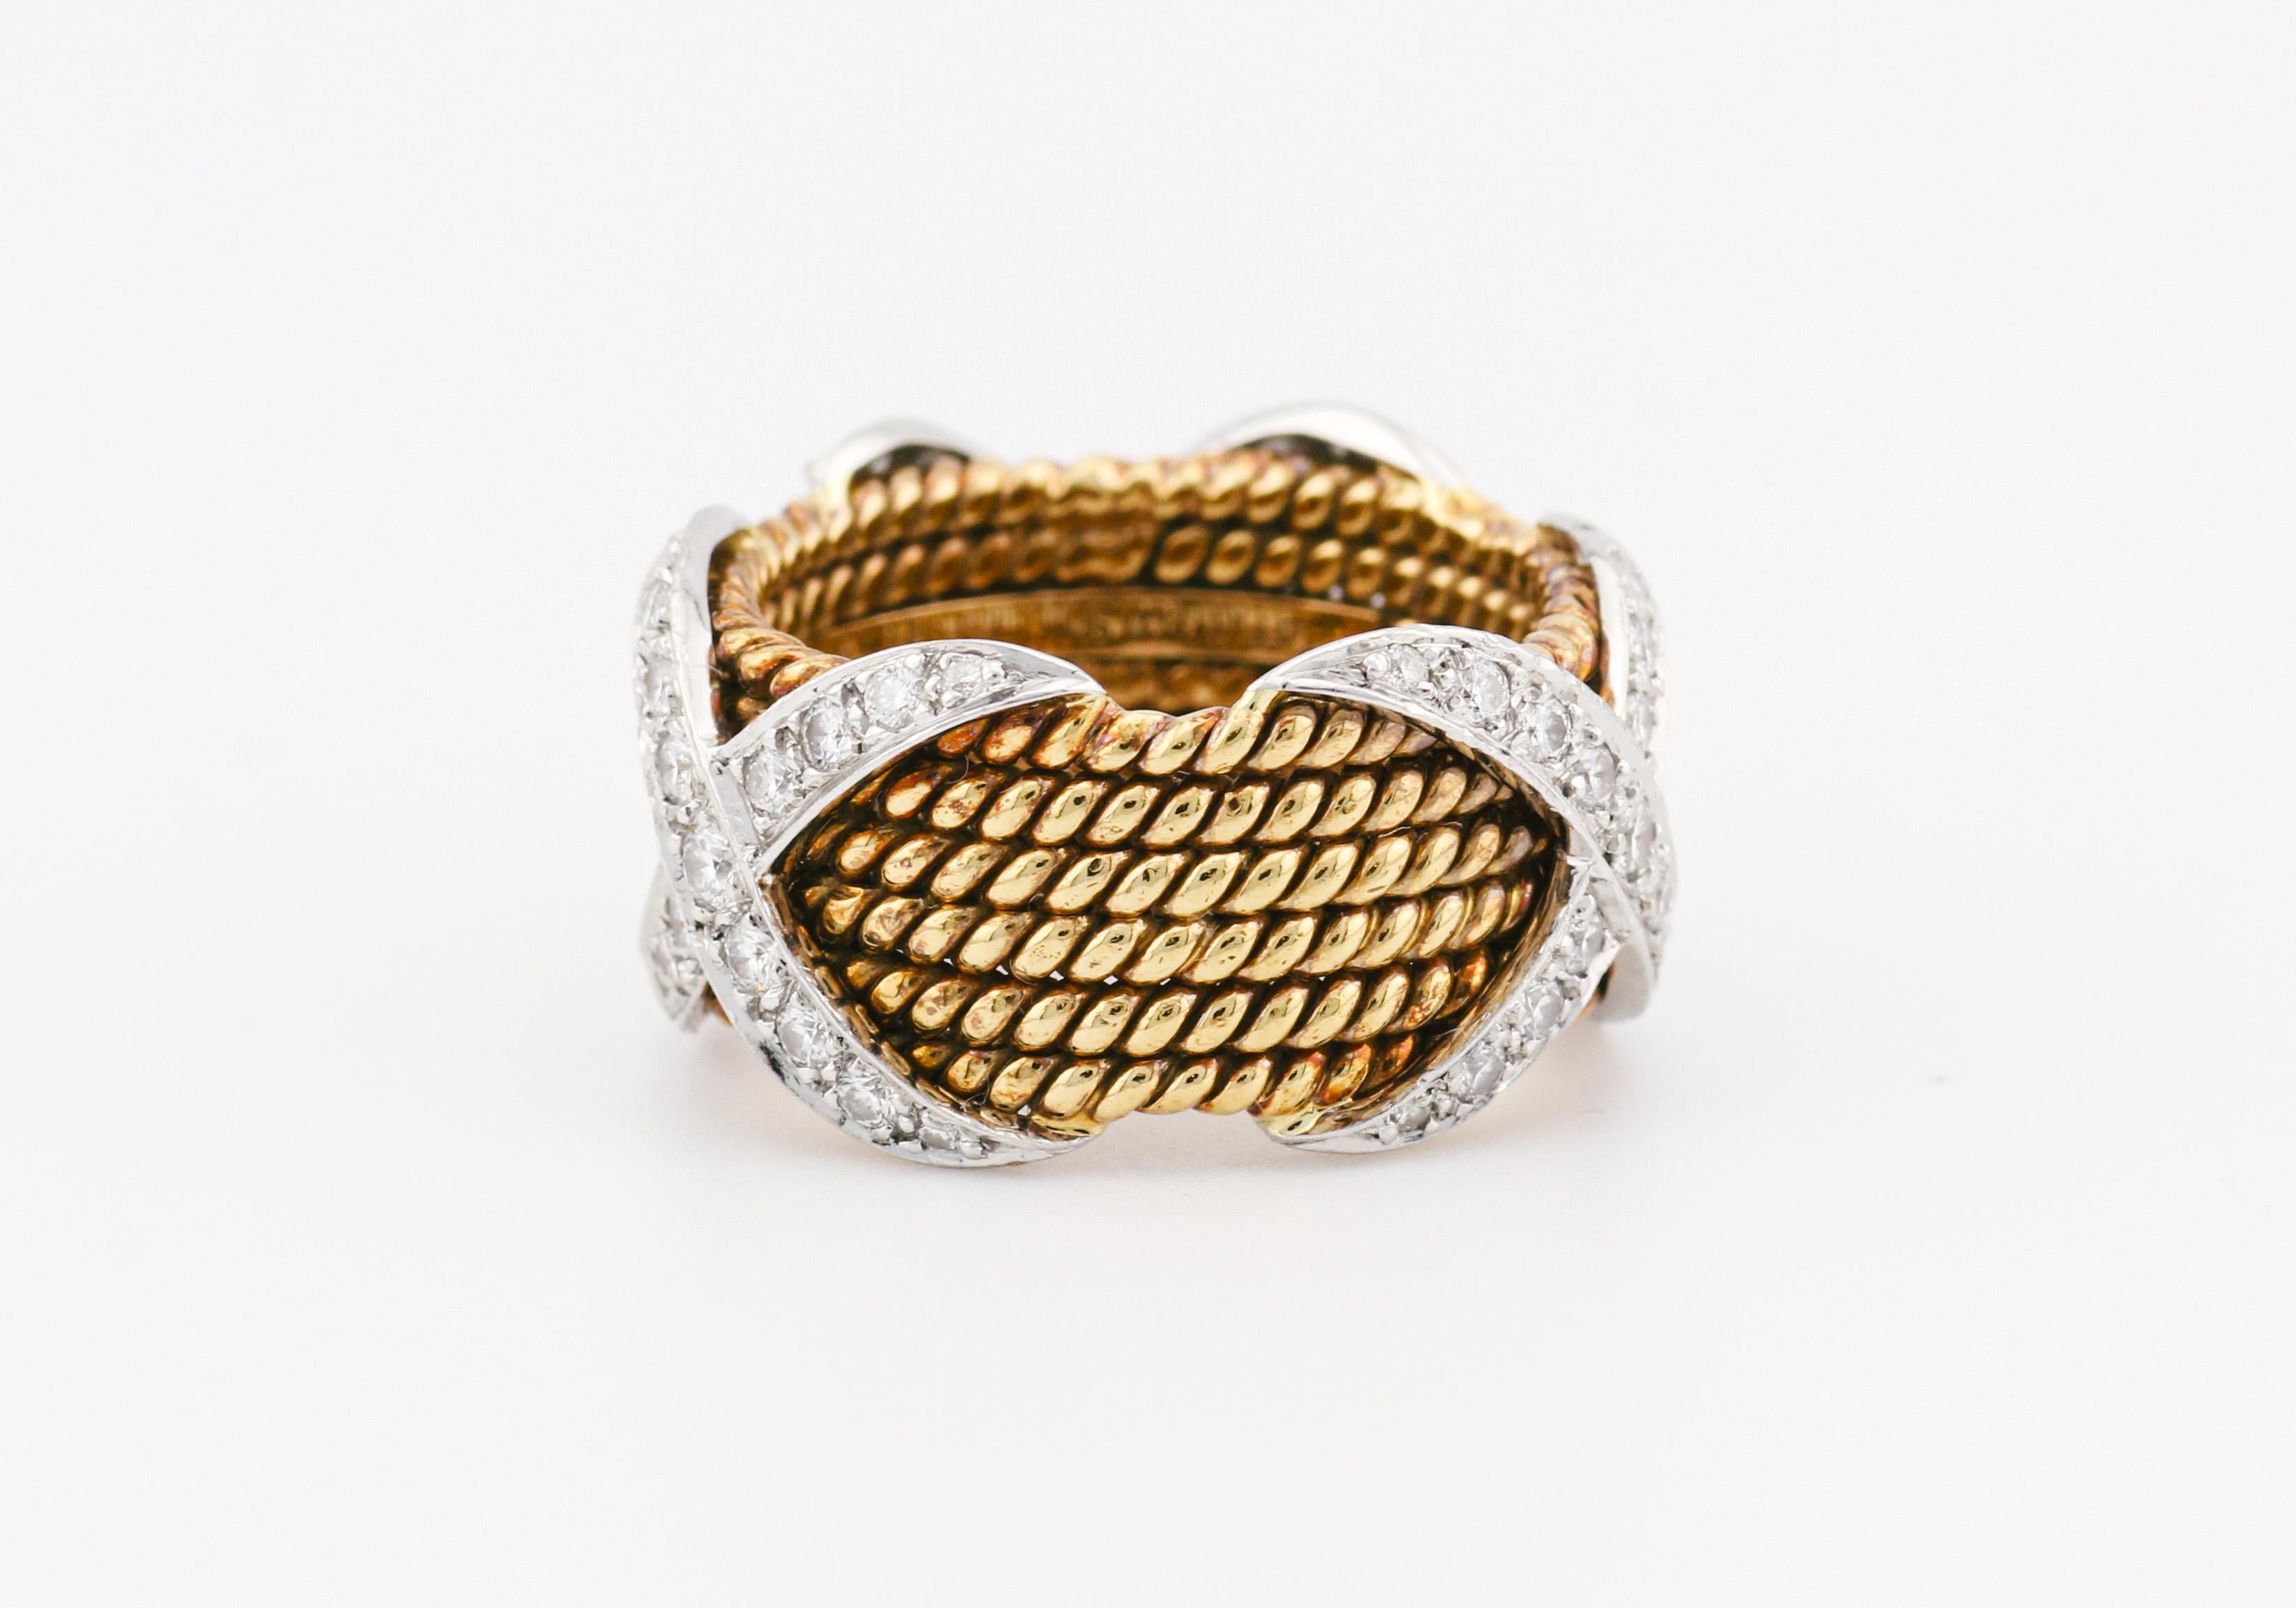 Wir stellen vor: Tiffany & Co. Schlumberger 18K Gelbgold 6-reihiger Ring im Seil-Design mit X aus Platin, verziert mit Diamanten - ein Meisterwerk, das klassische Kunstfertigkeit und moderne Eleganz harmonisch miteinander verbindet. Dieser Ring, der